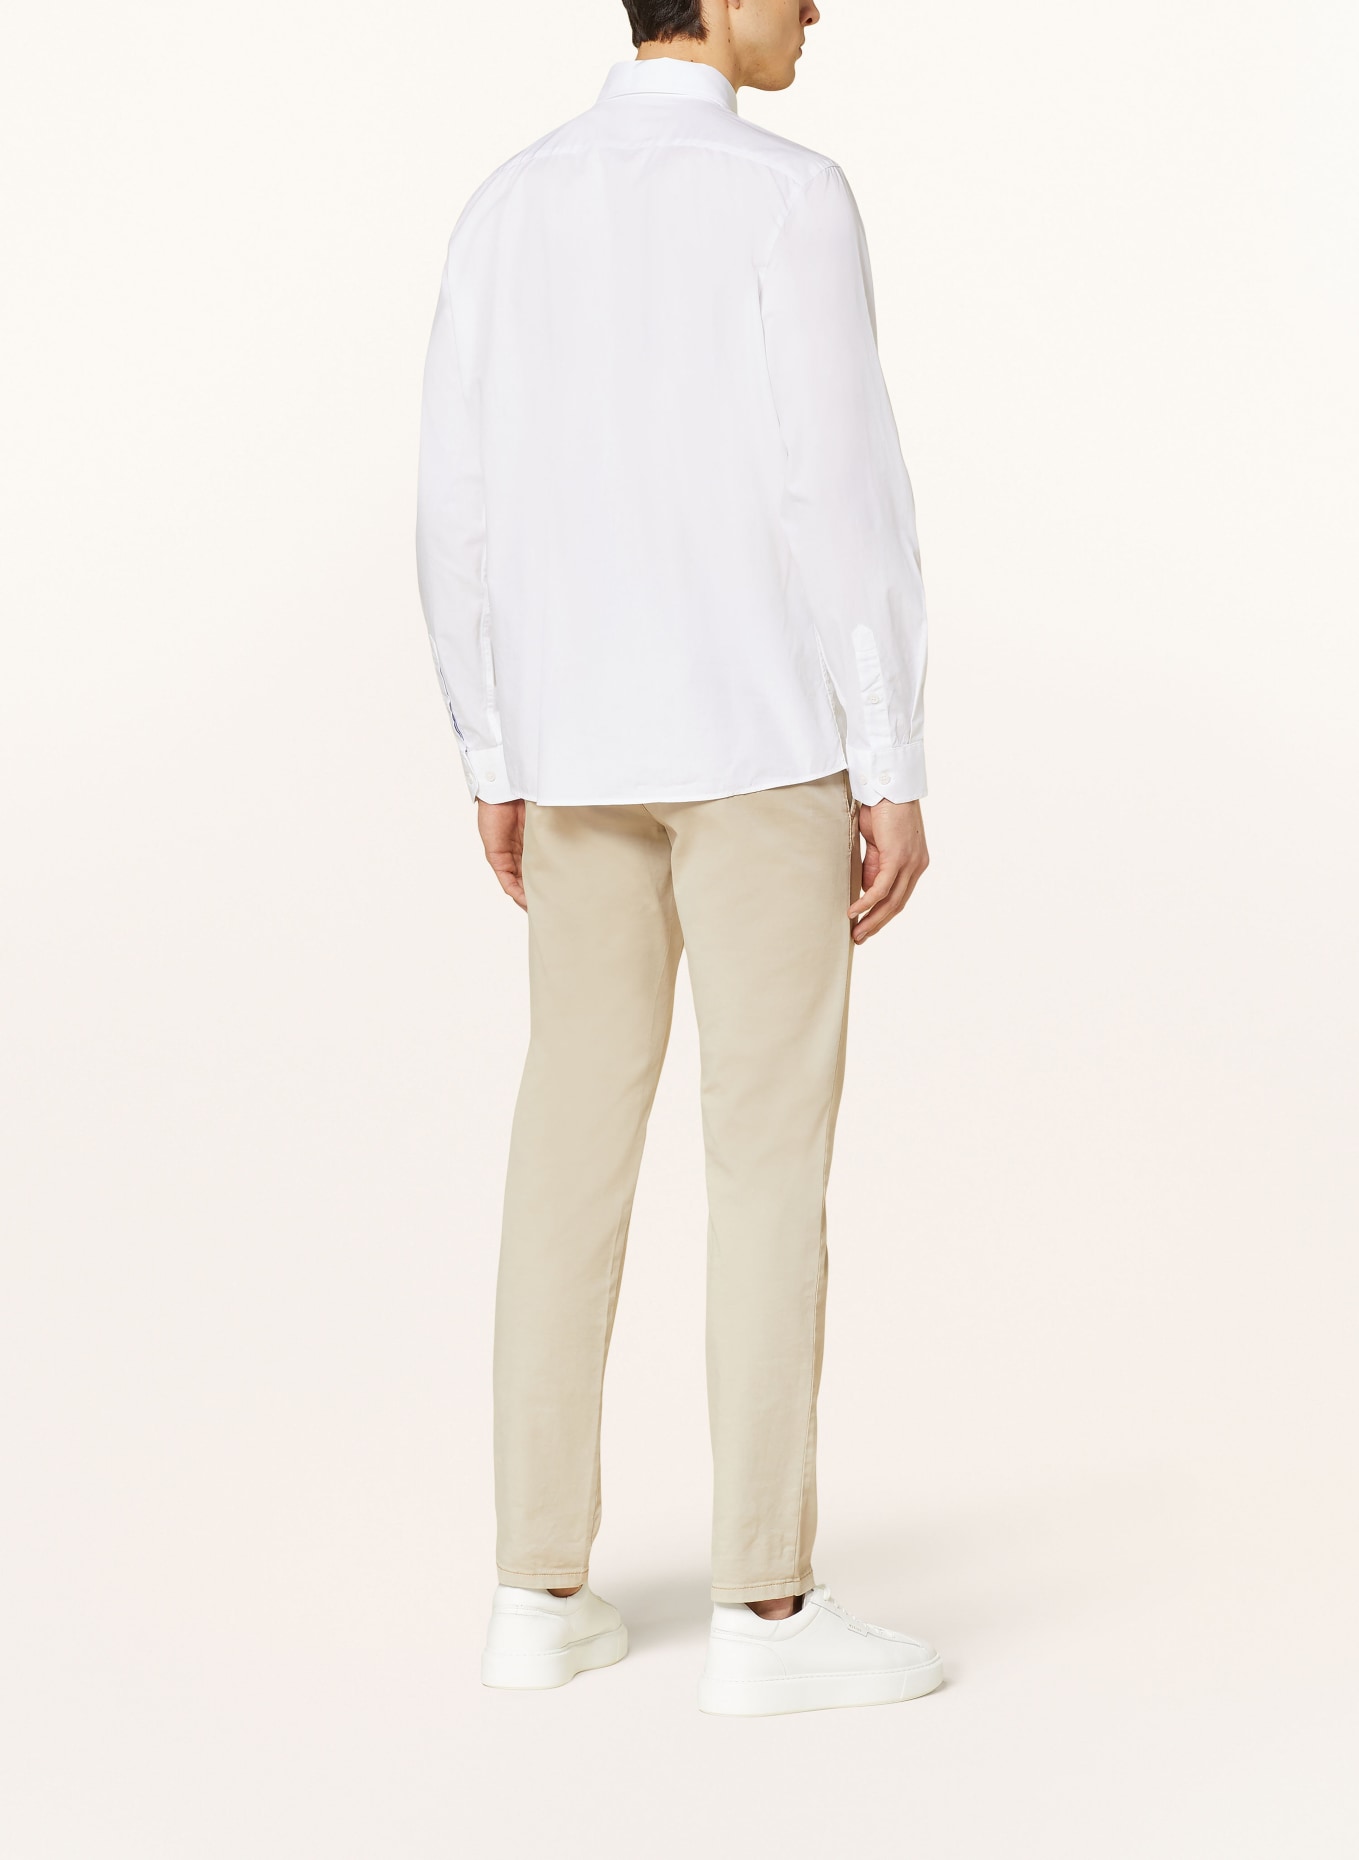 MAERZ MUENCHEN Hemd Modern Fit, Farbe: WEISS (Bild 3)